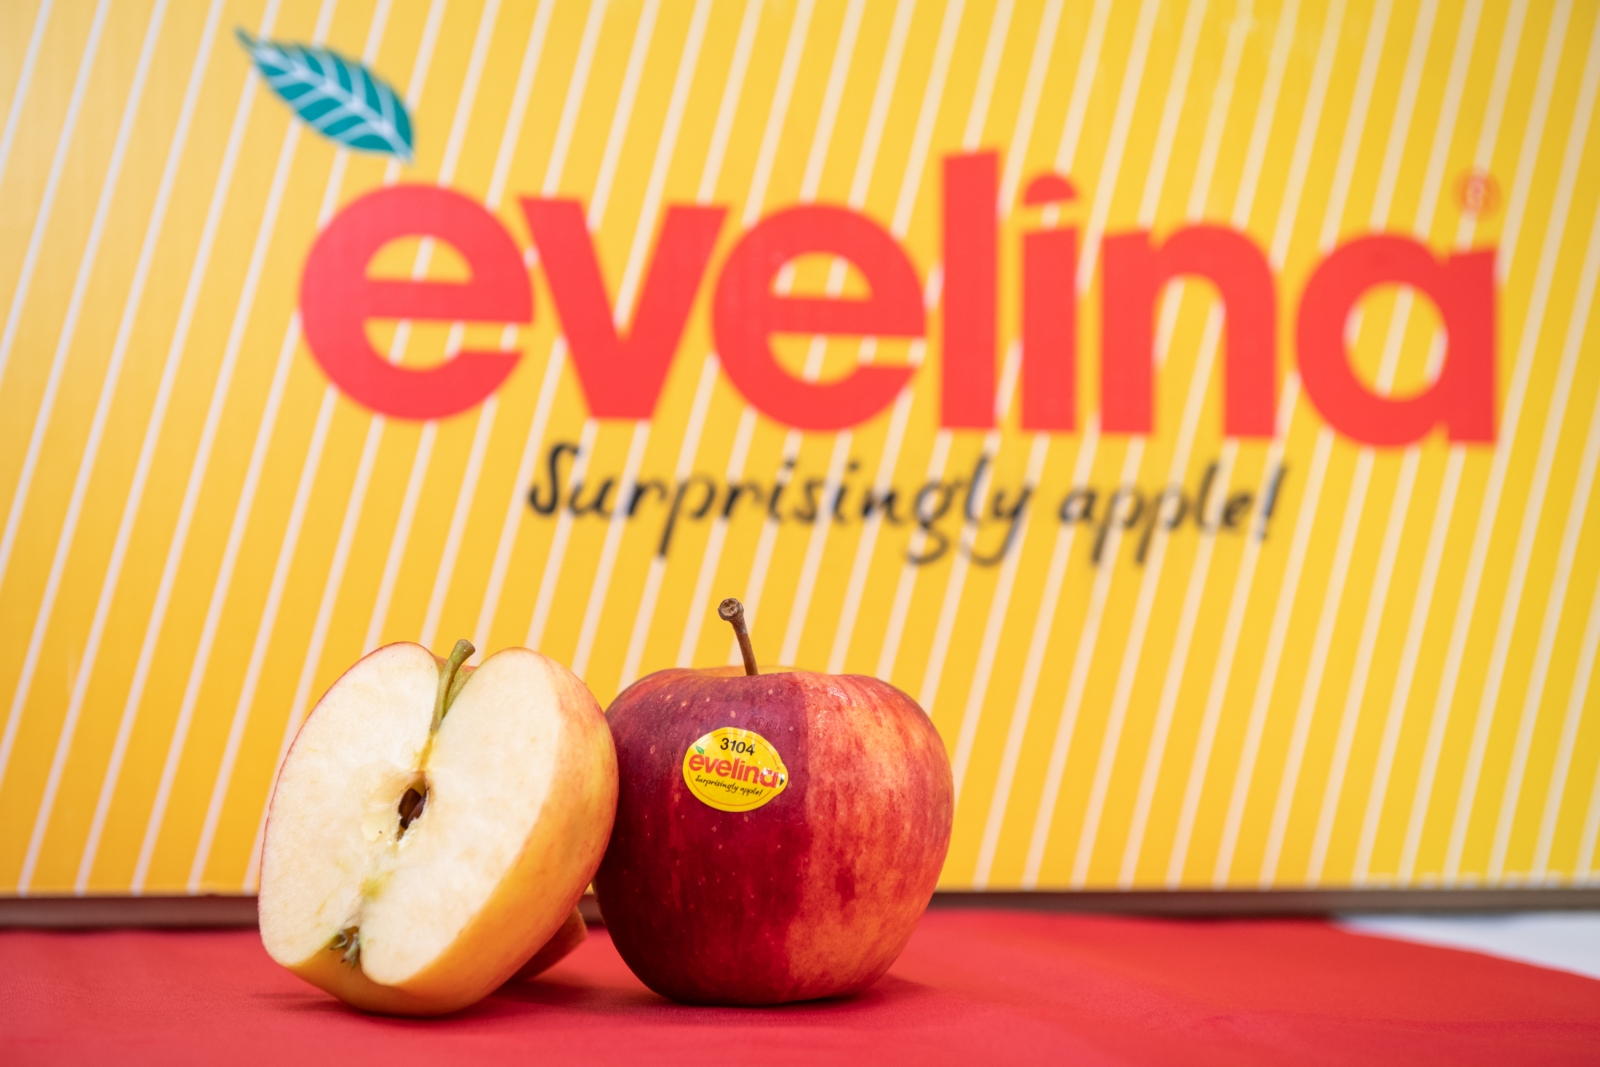 義大利蘋果以Evelina為品牌行銷各地，標榜是「令人驚豔的蘋果」。